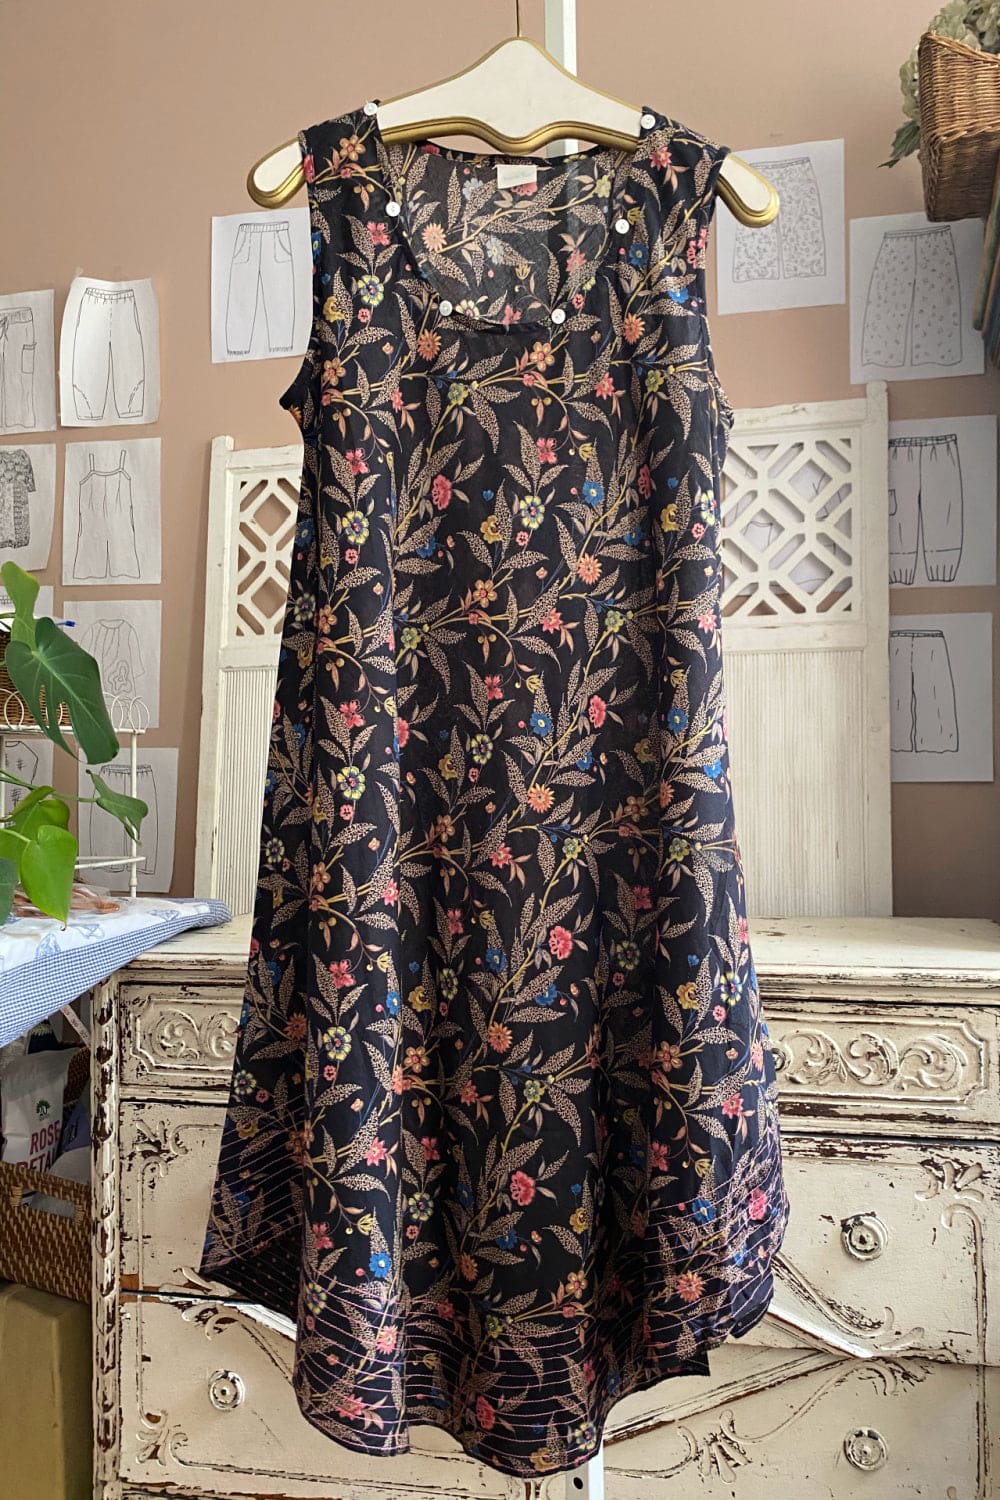 Black curved hem tank dress in a pretty floral pattern.